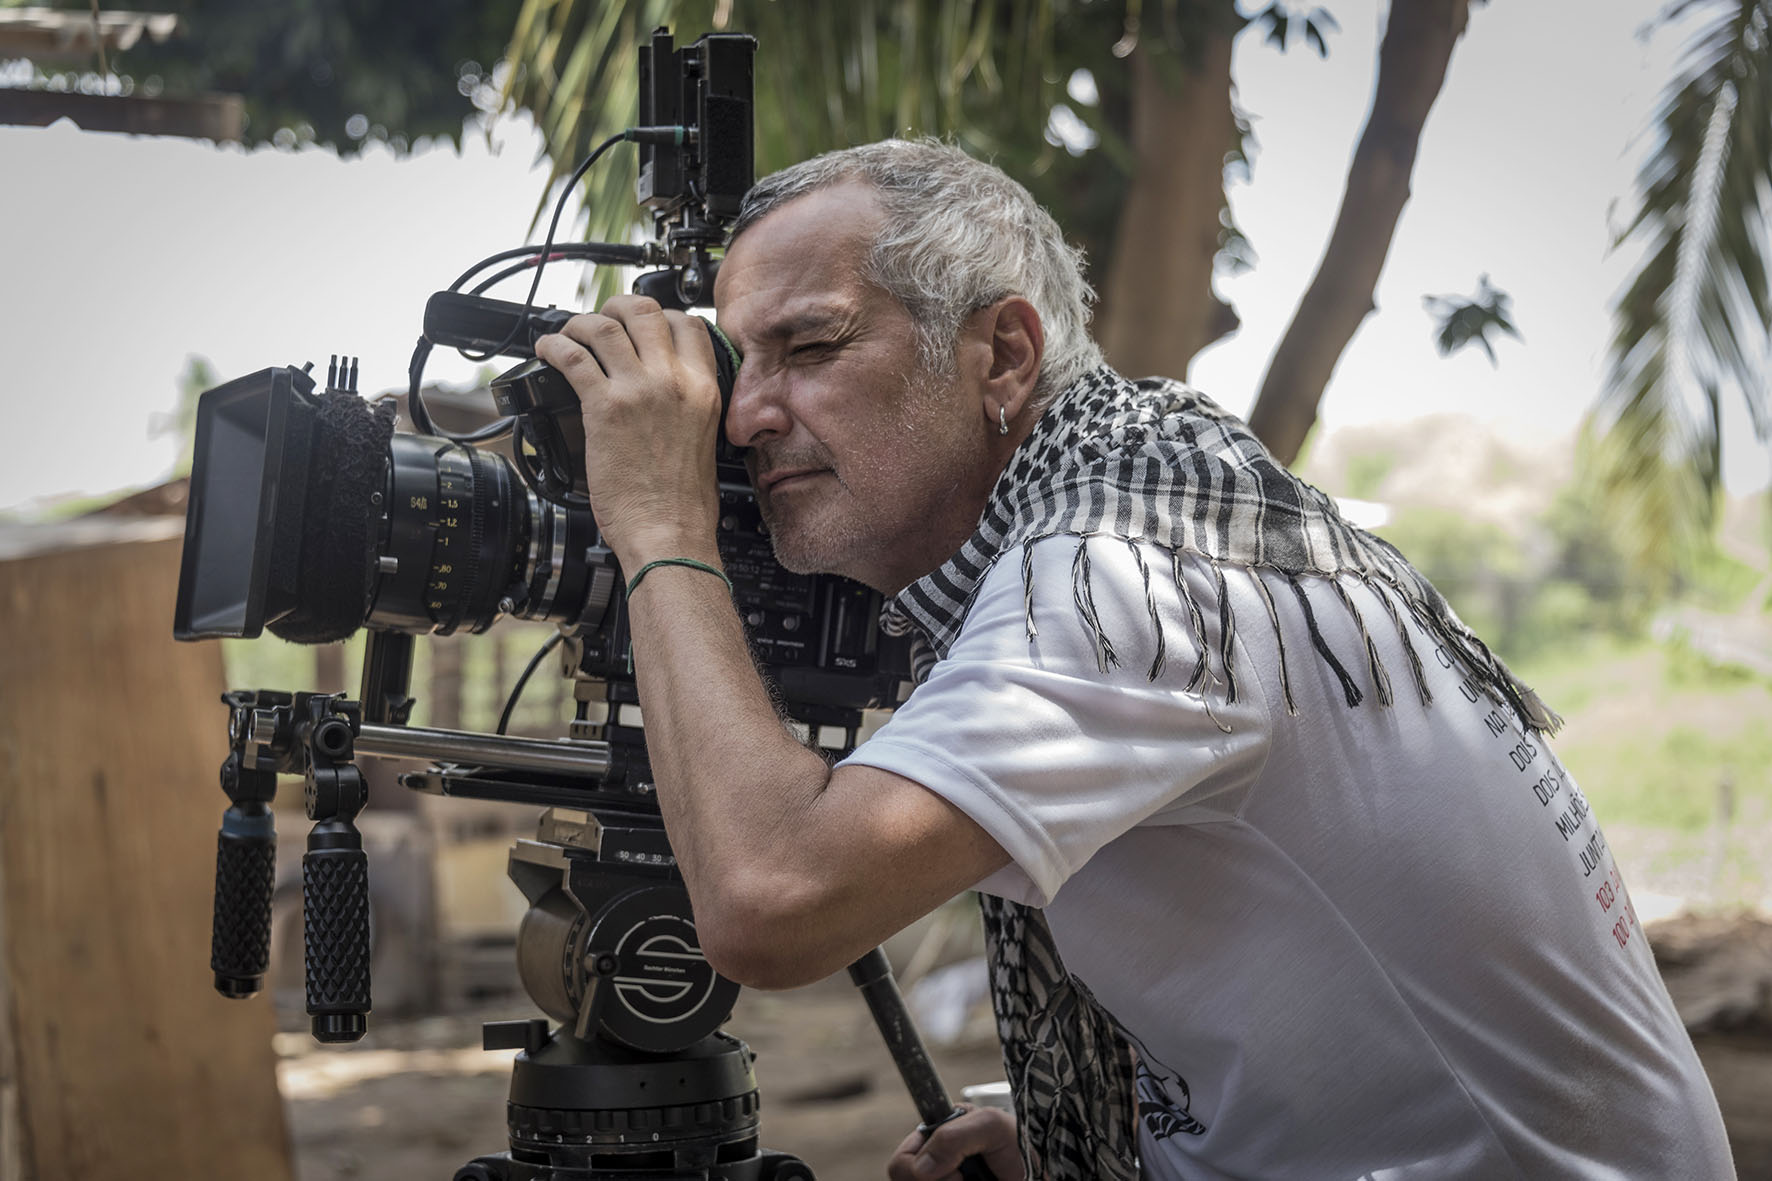 Foto do diretor Lírio Ferreira. Ele está de perfil, olhando pela lente de uma câmera de filmagem em um tripé. Lírio é um homem branco de 50 anos, com cabelos grisalhos e ralos. Ele usa uma camiseta branca e um chale por cima.